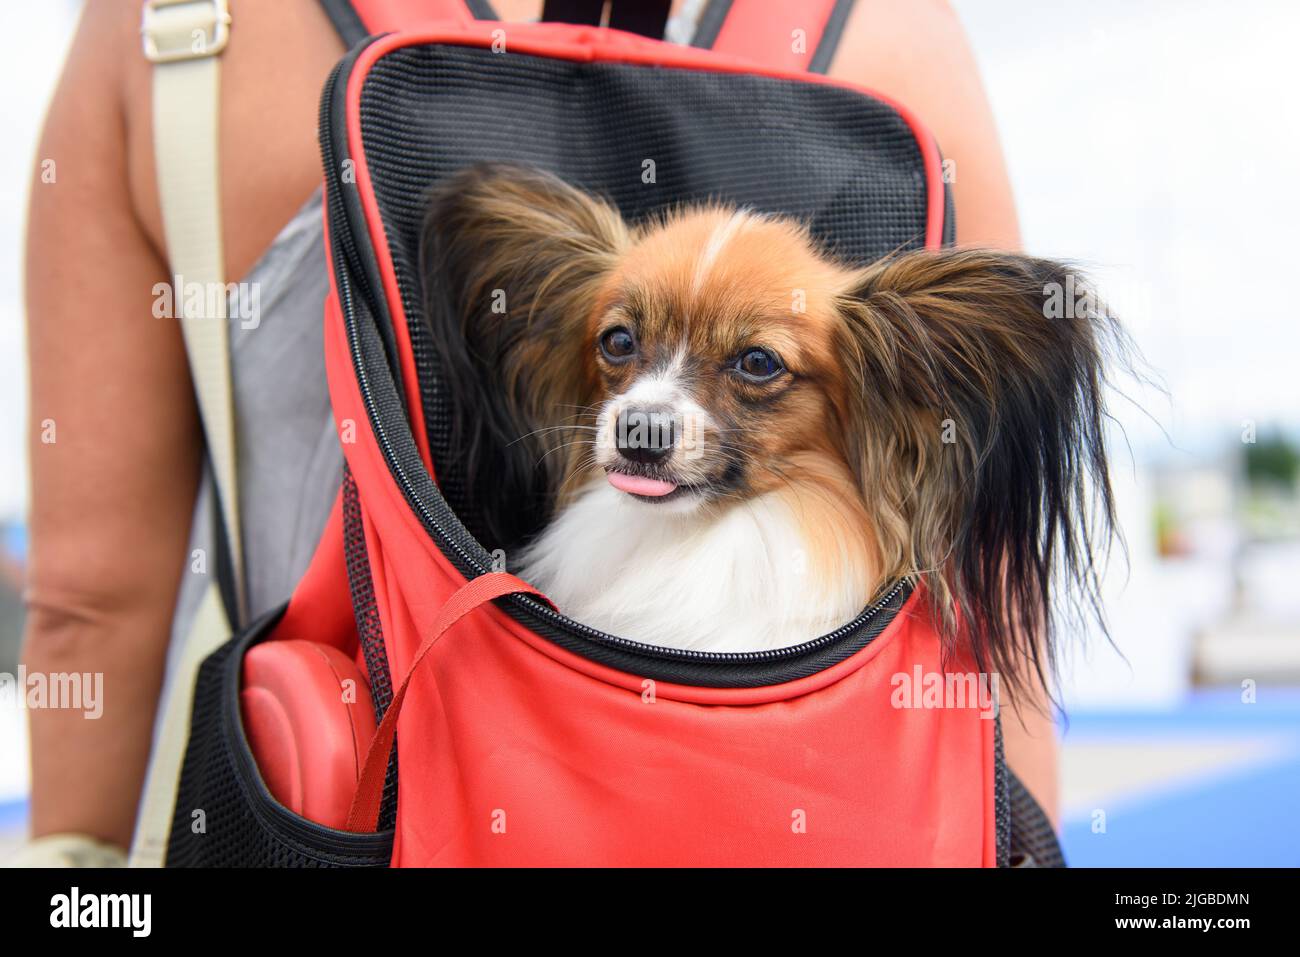 Ein Hund der Papillon-Rasse sitzt in einem roten Rucksack hinter der Herrin und blickt nach vorne und ragt aus seiner Zunge. Hochformat. Nahaufnahme. Stockfoto